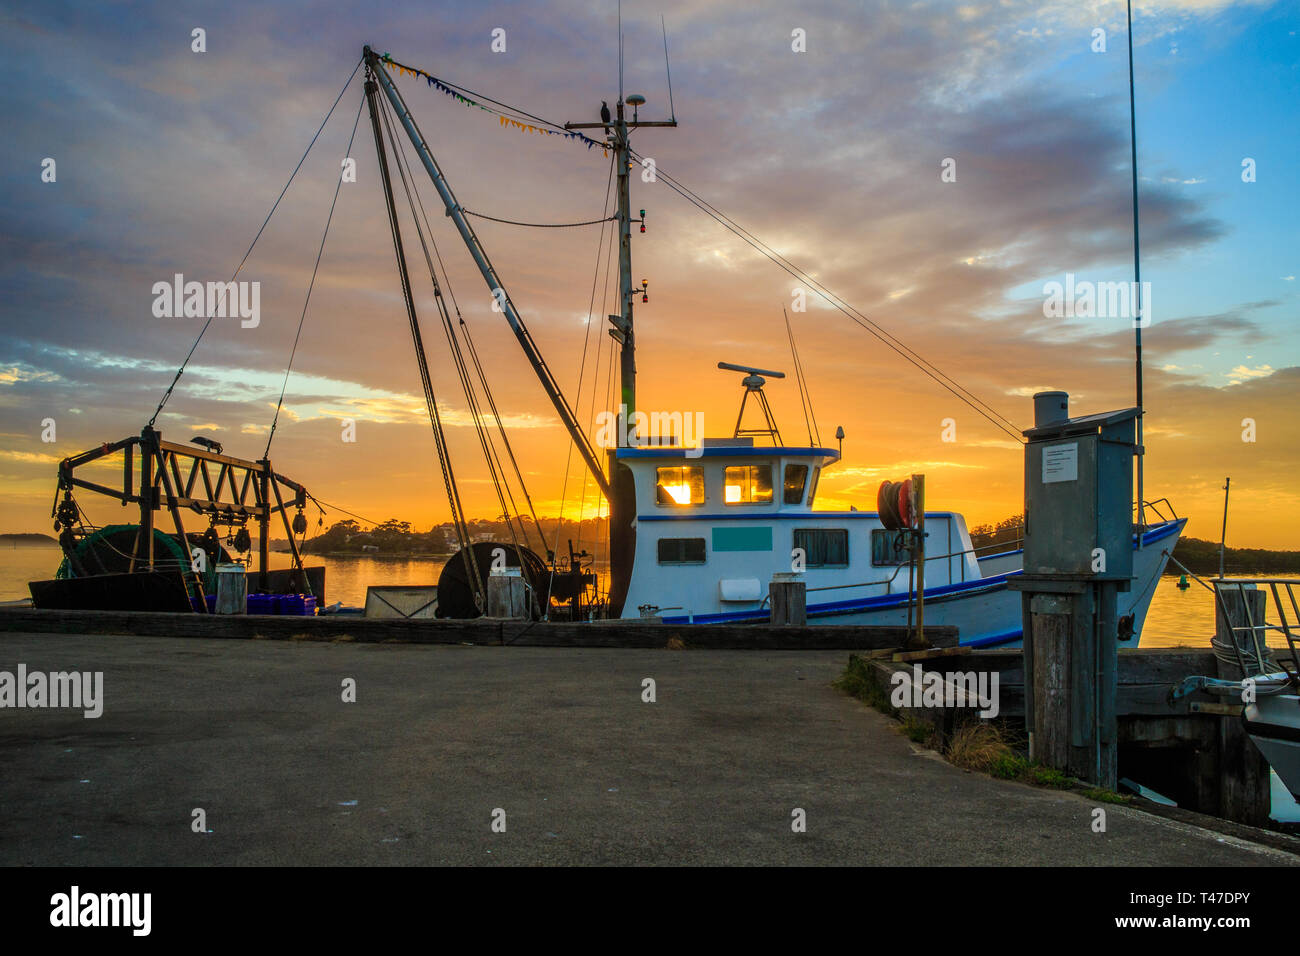 Bateaux de pêche au lever du soleil. Greenwell Point, New South Wales, Australia Banque D'Images